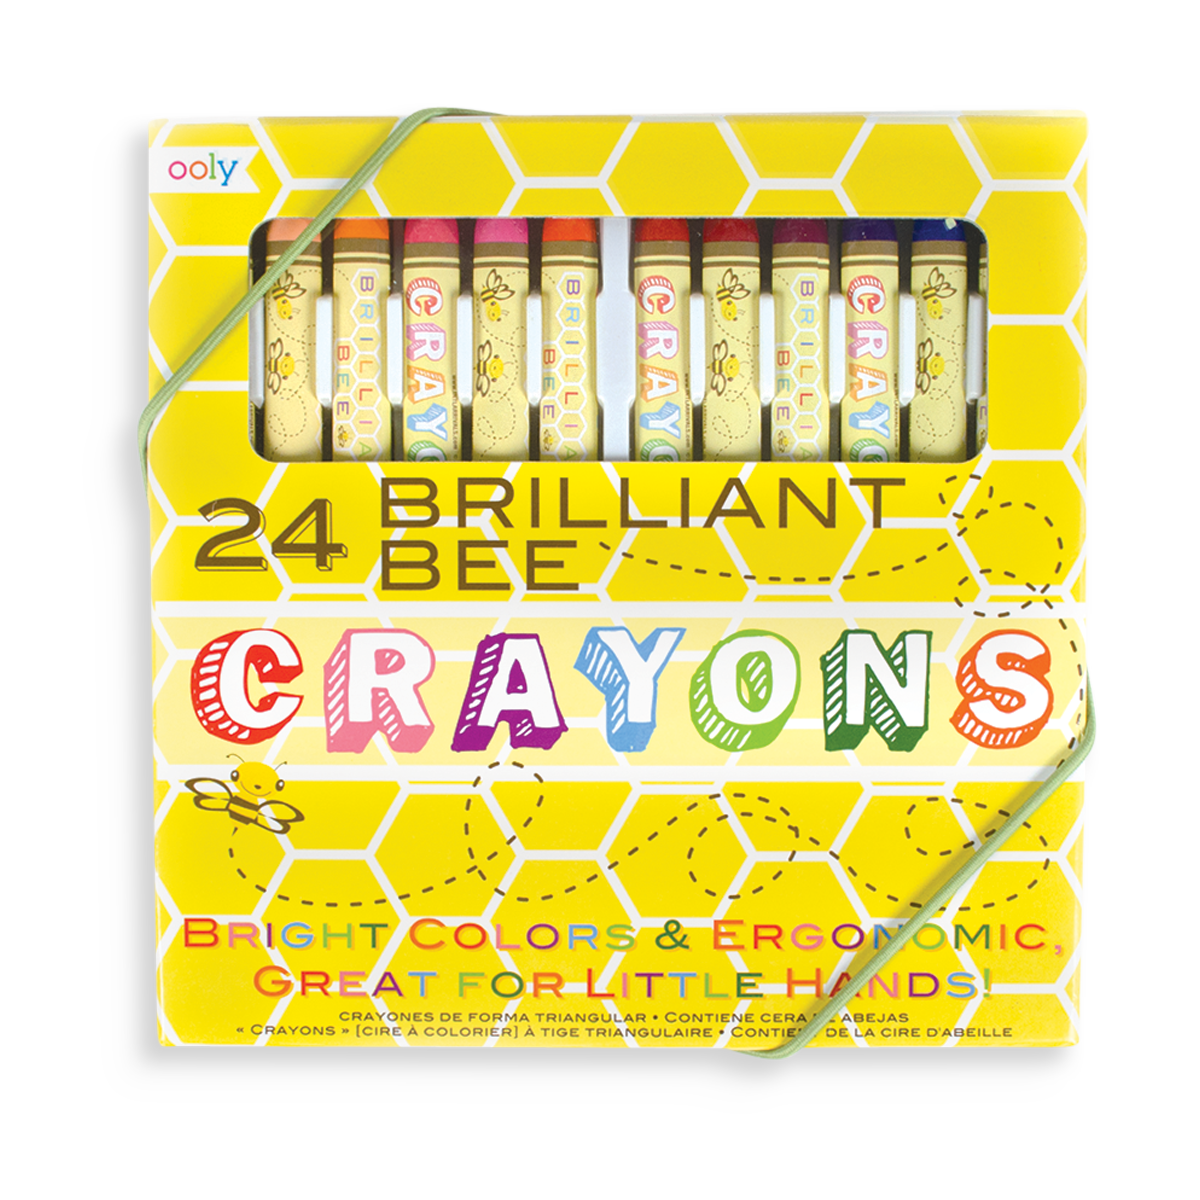 Bathtub Crayon - Brilliant Promos - Be Brilliant!